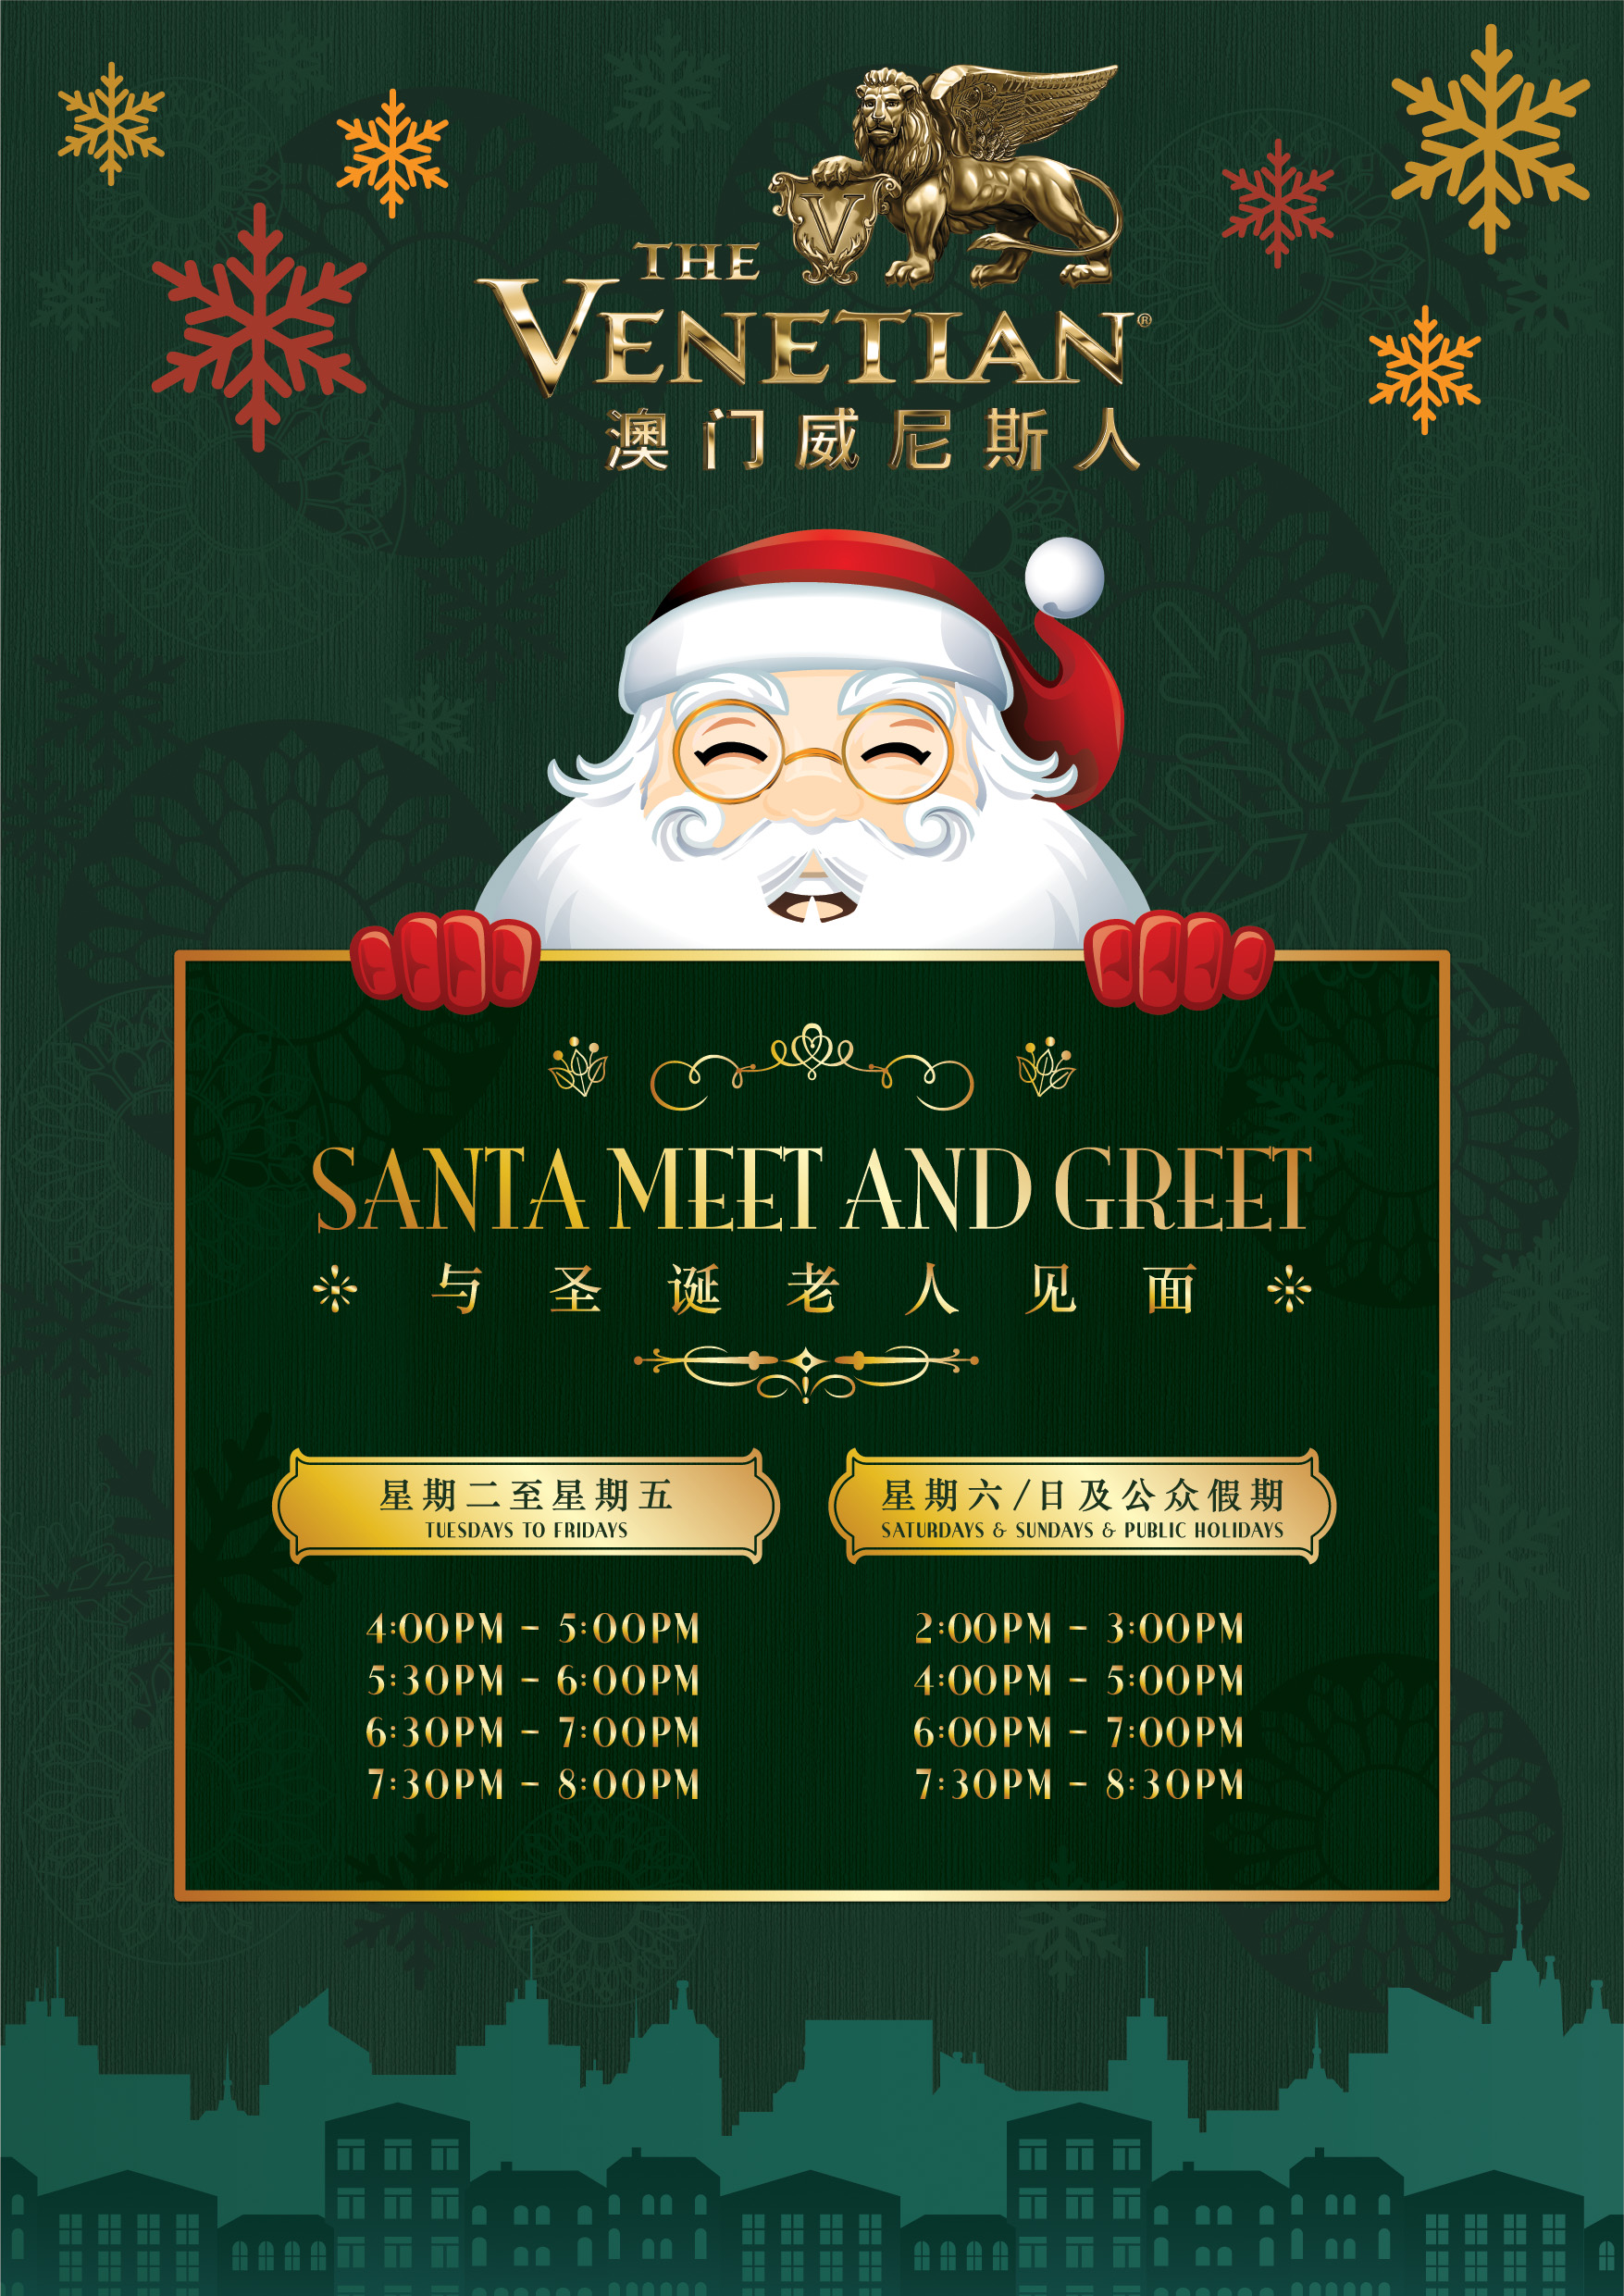 santa venetian schedule